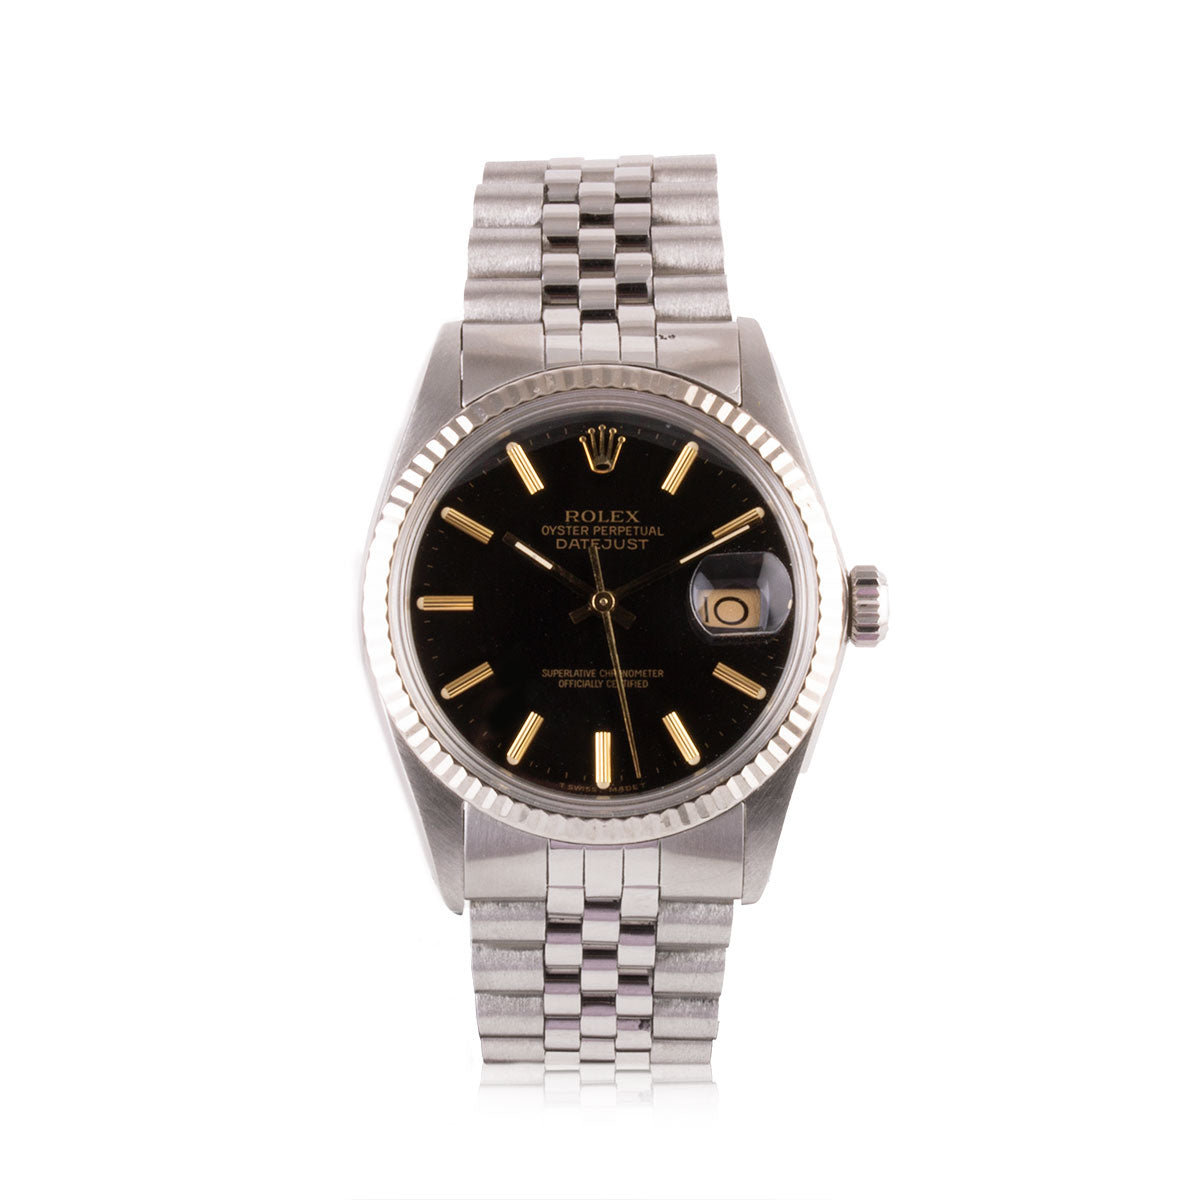 Second-hand watch - Rolex - Datejust - 5300€